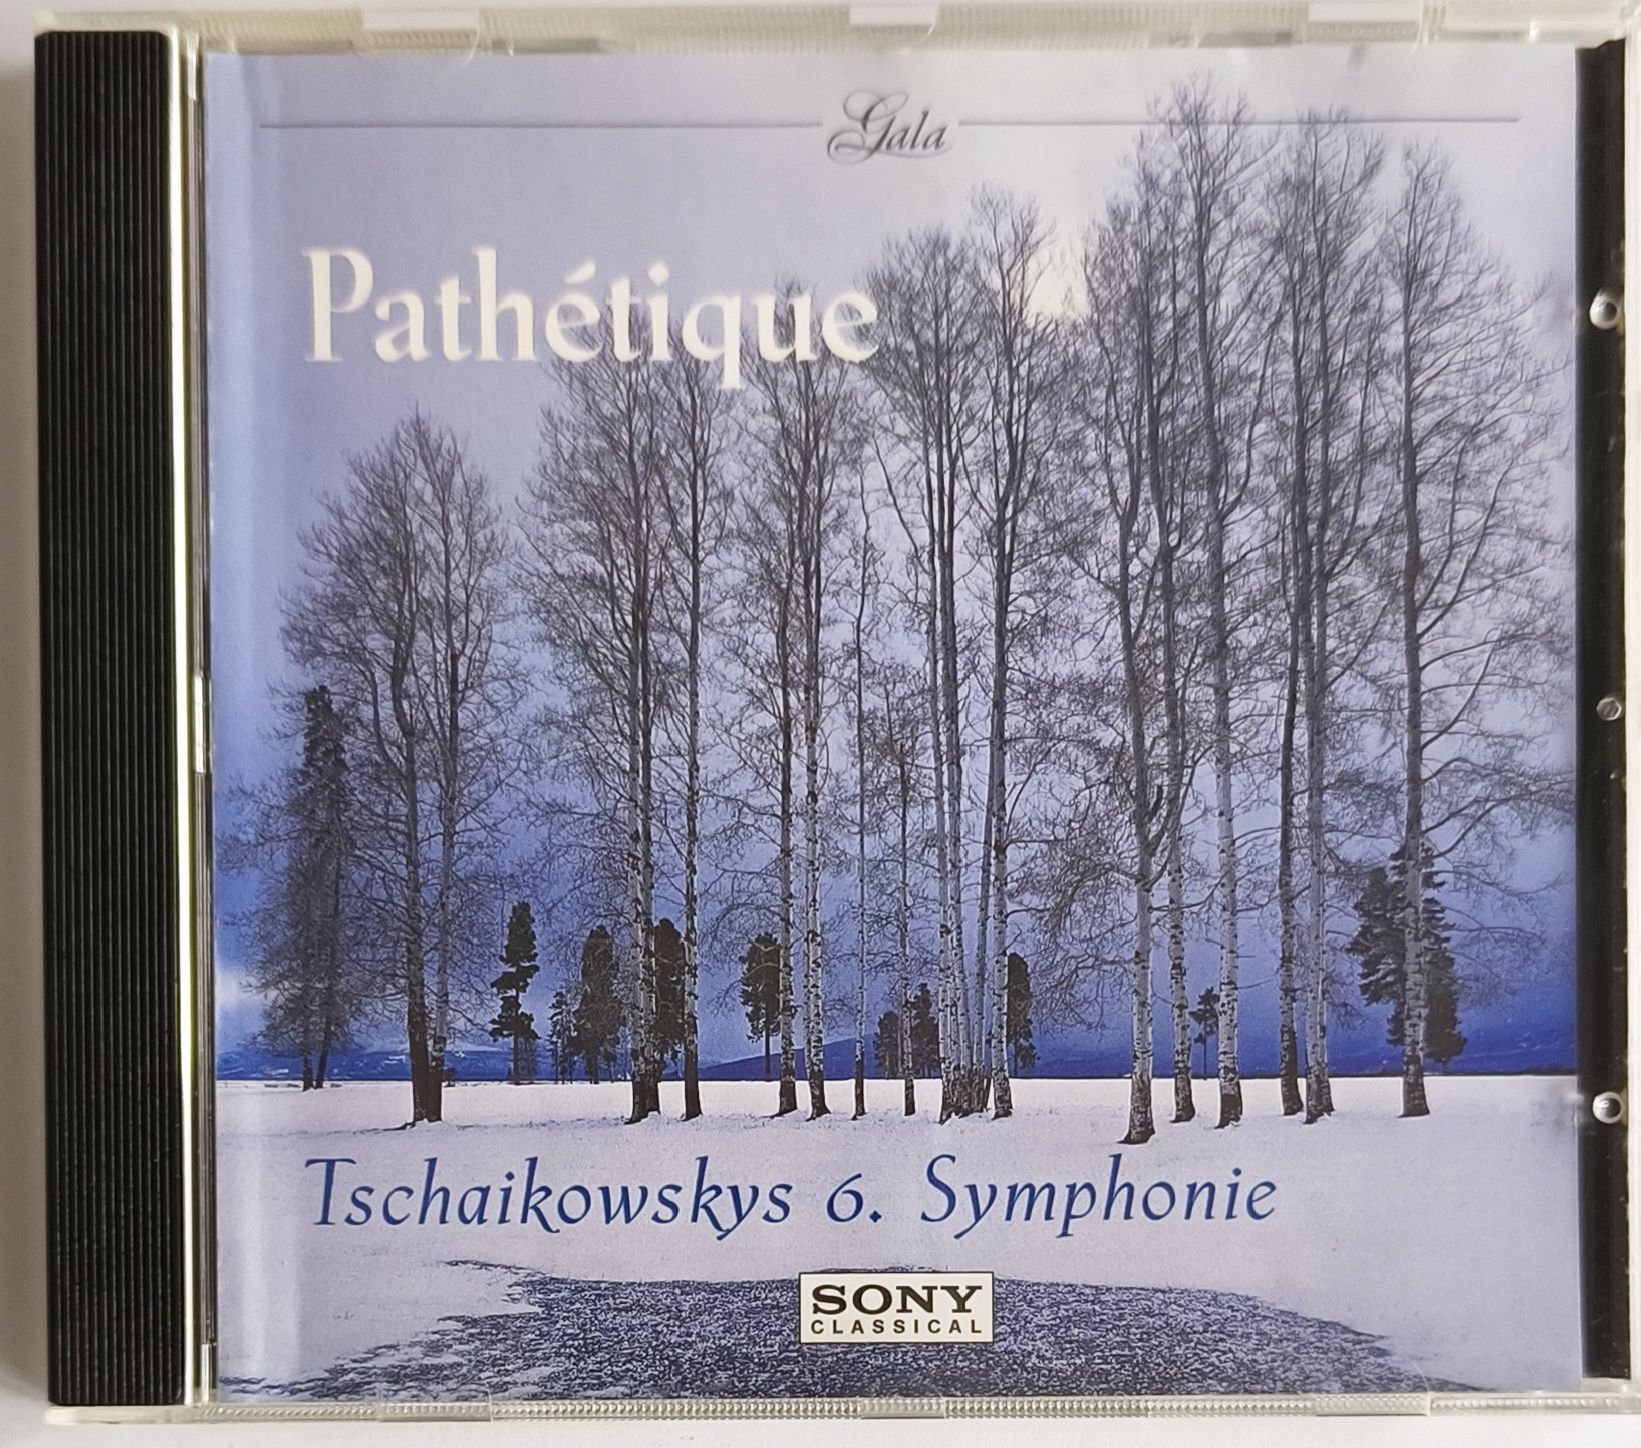 Pathetique Tchaikovsky 6. Symhonie 2001r